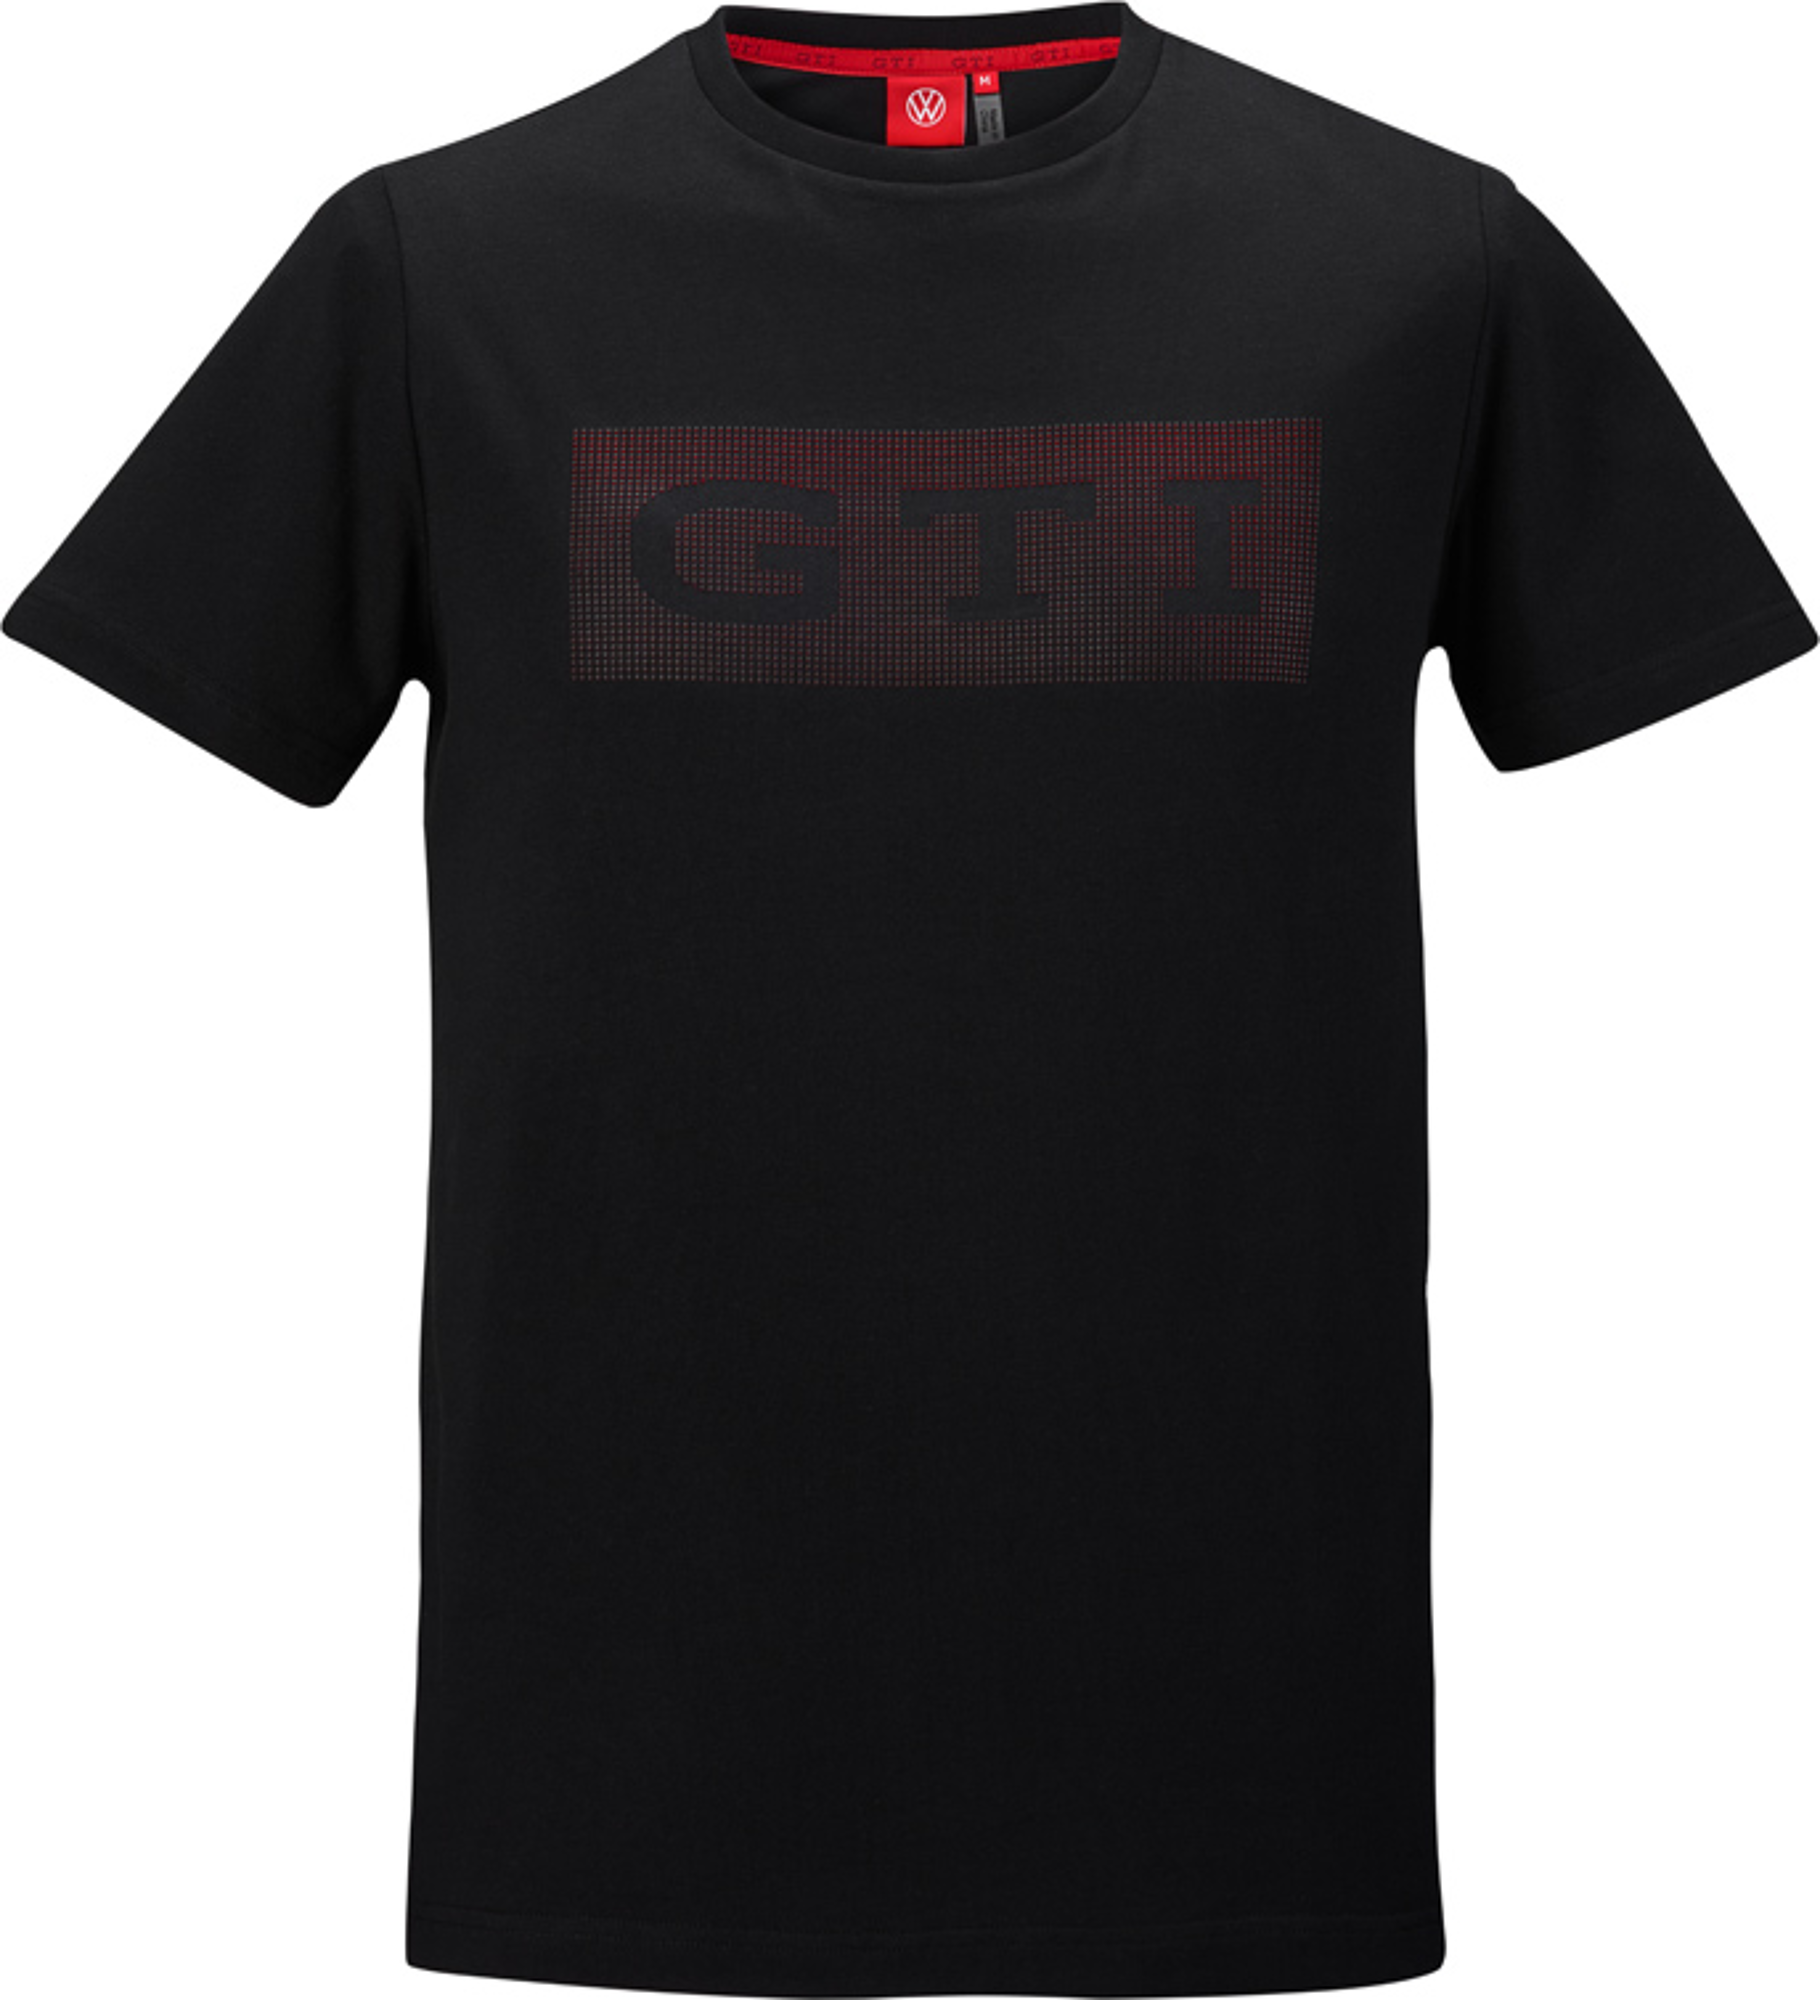 ik betwijfel het rijk Sportman t-shirt XXL, heren, zwart, GTI-collectie / 5HV084200E 041